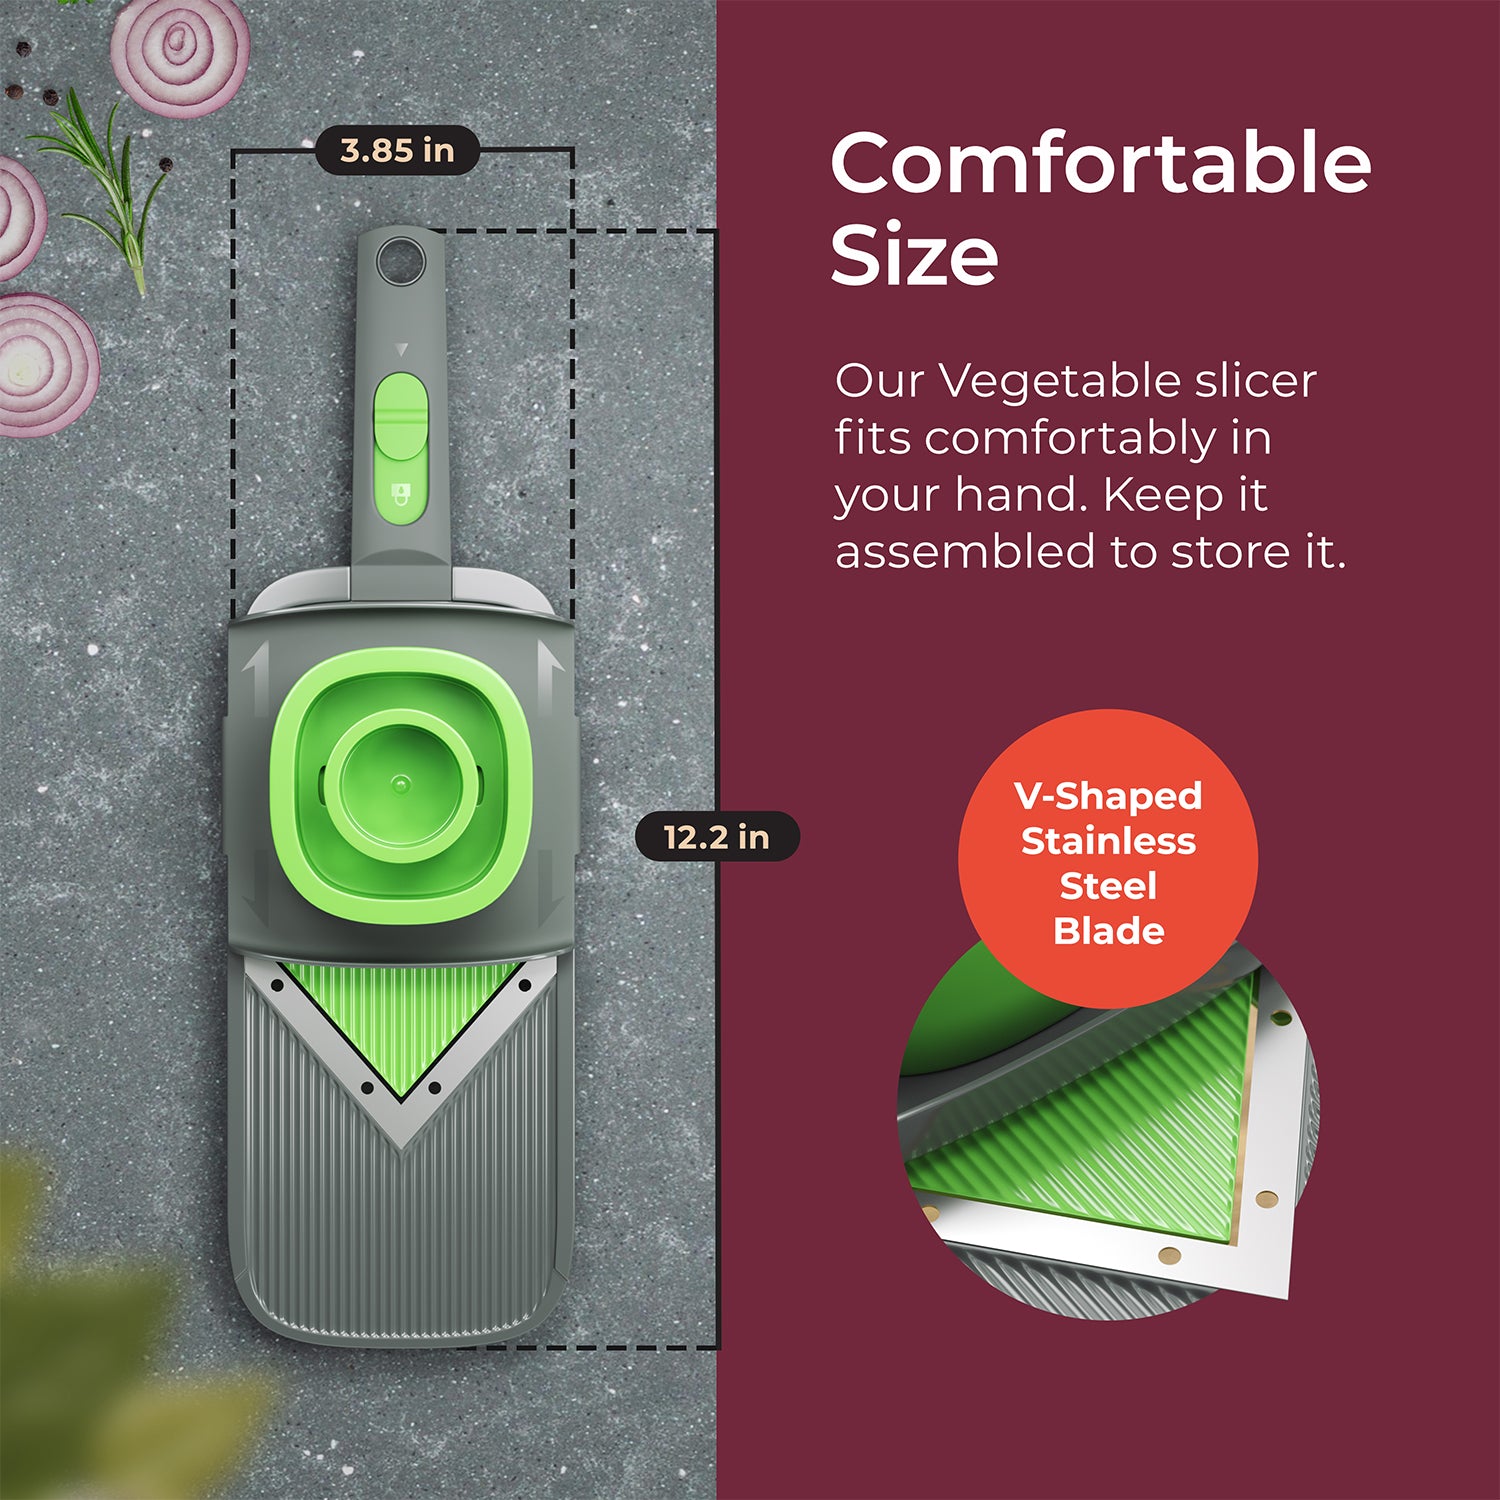 Mueller Vegetable Slicer Mandoline Handheld Utensil, Perfect for